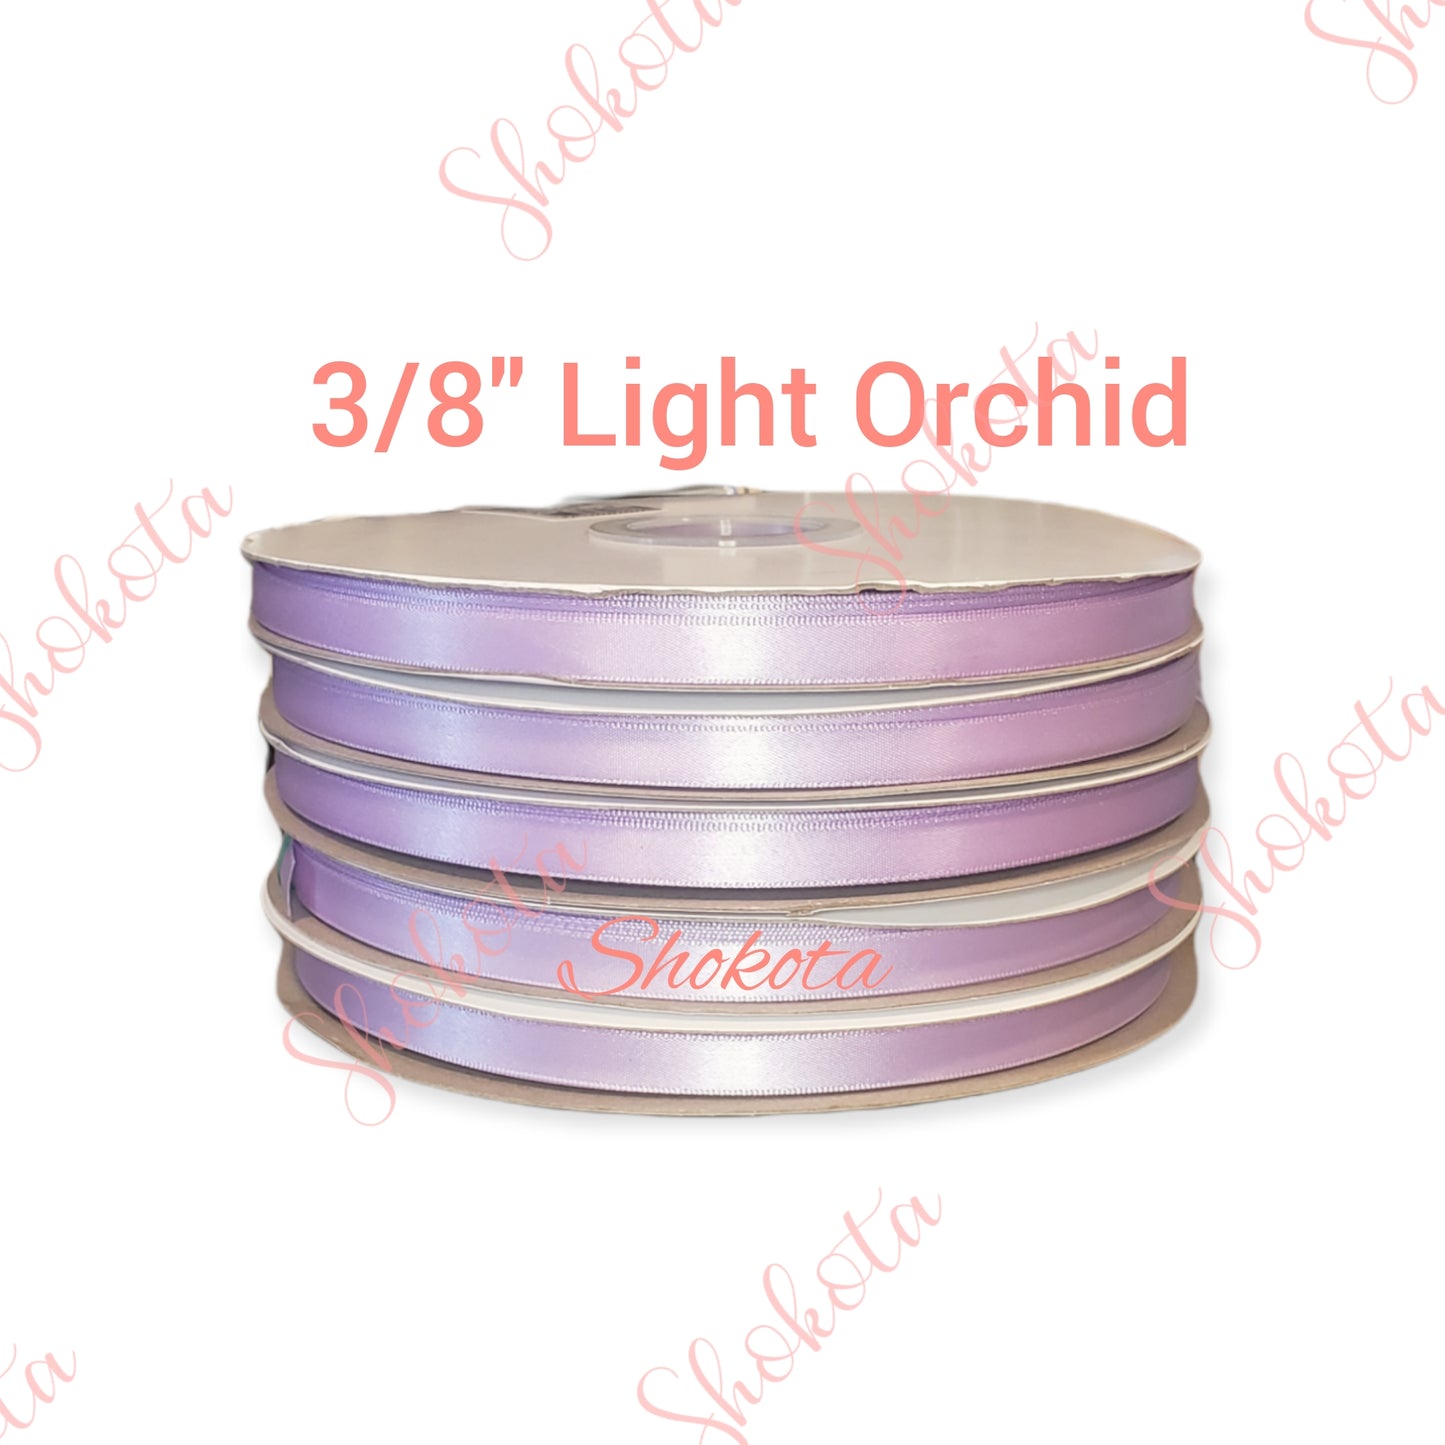 3/8" Light Orchid Satin Ribbon